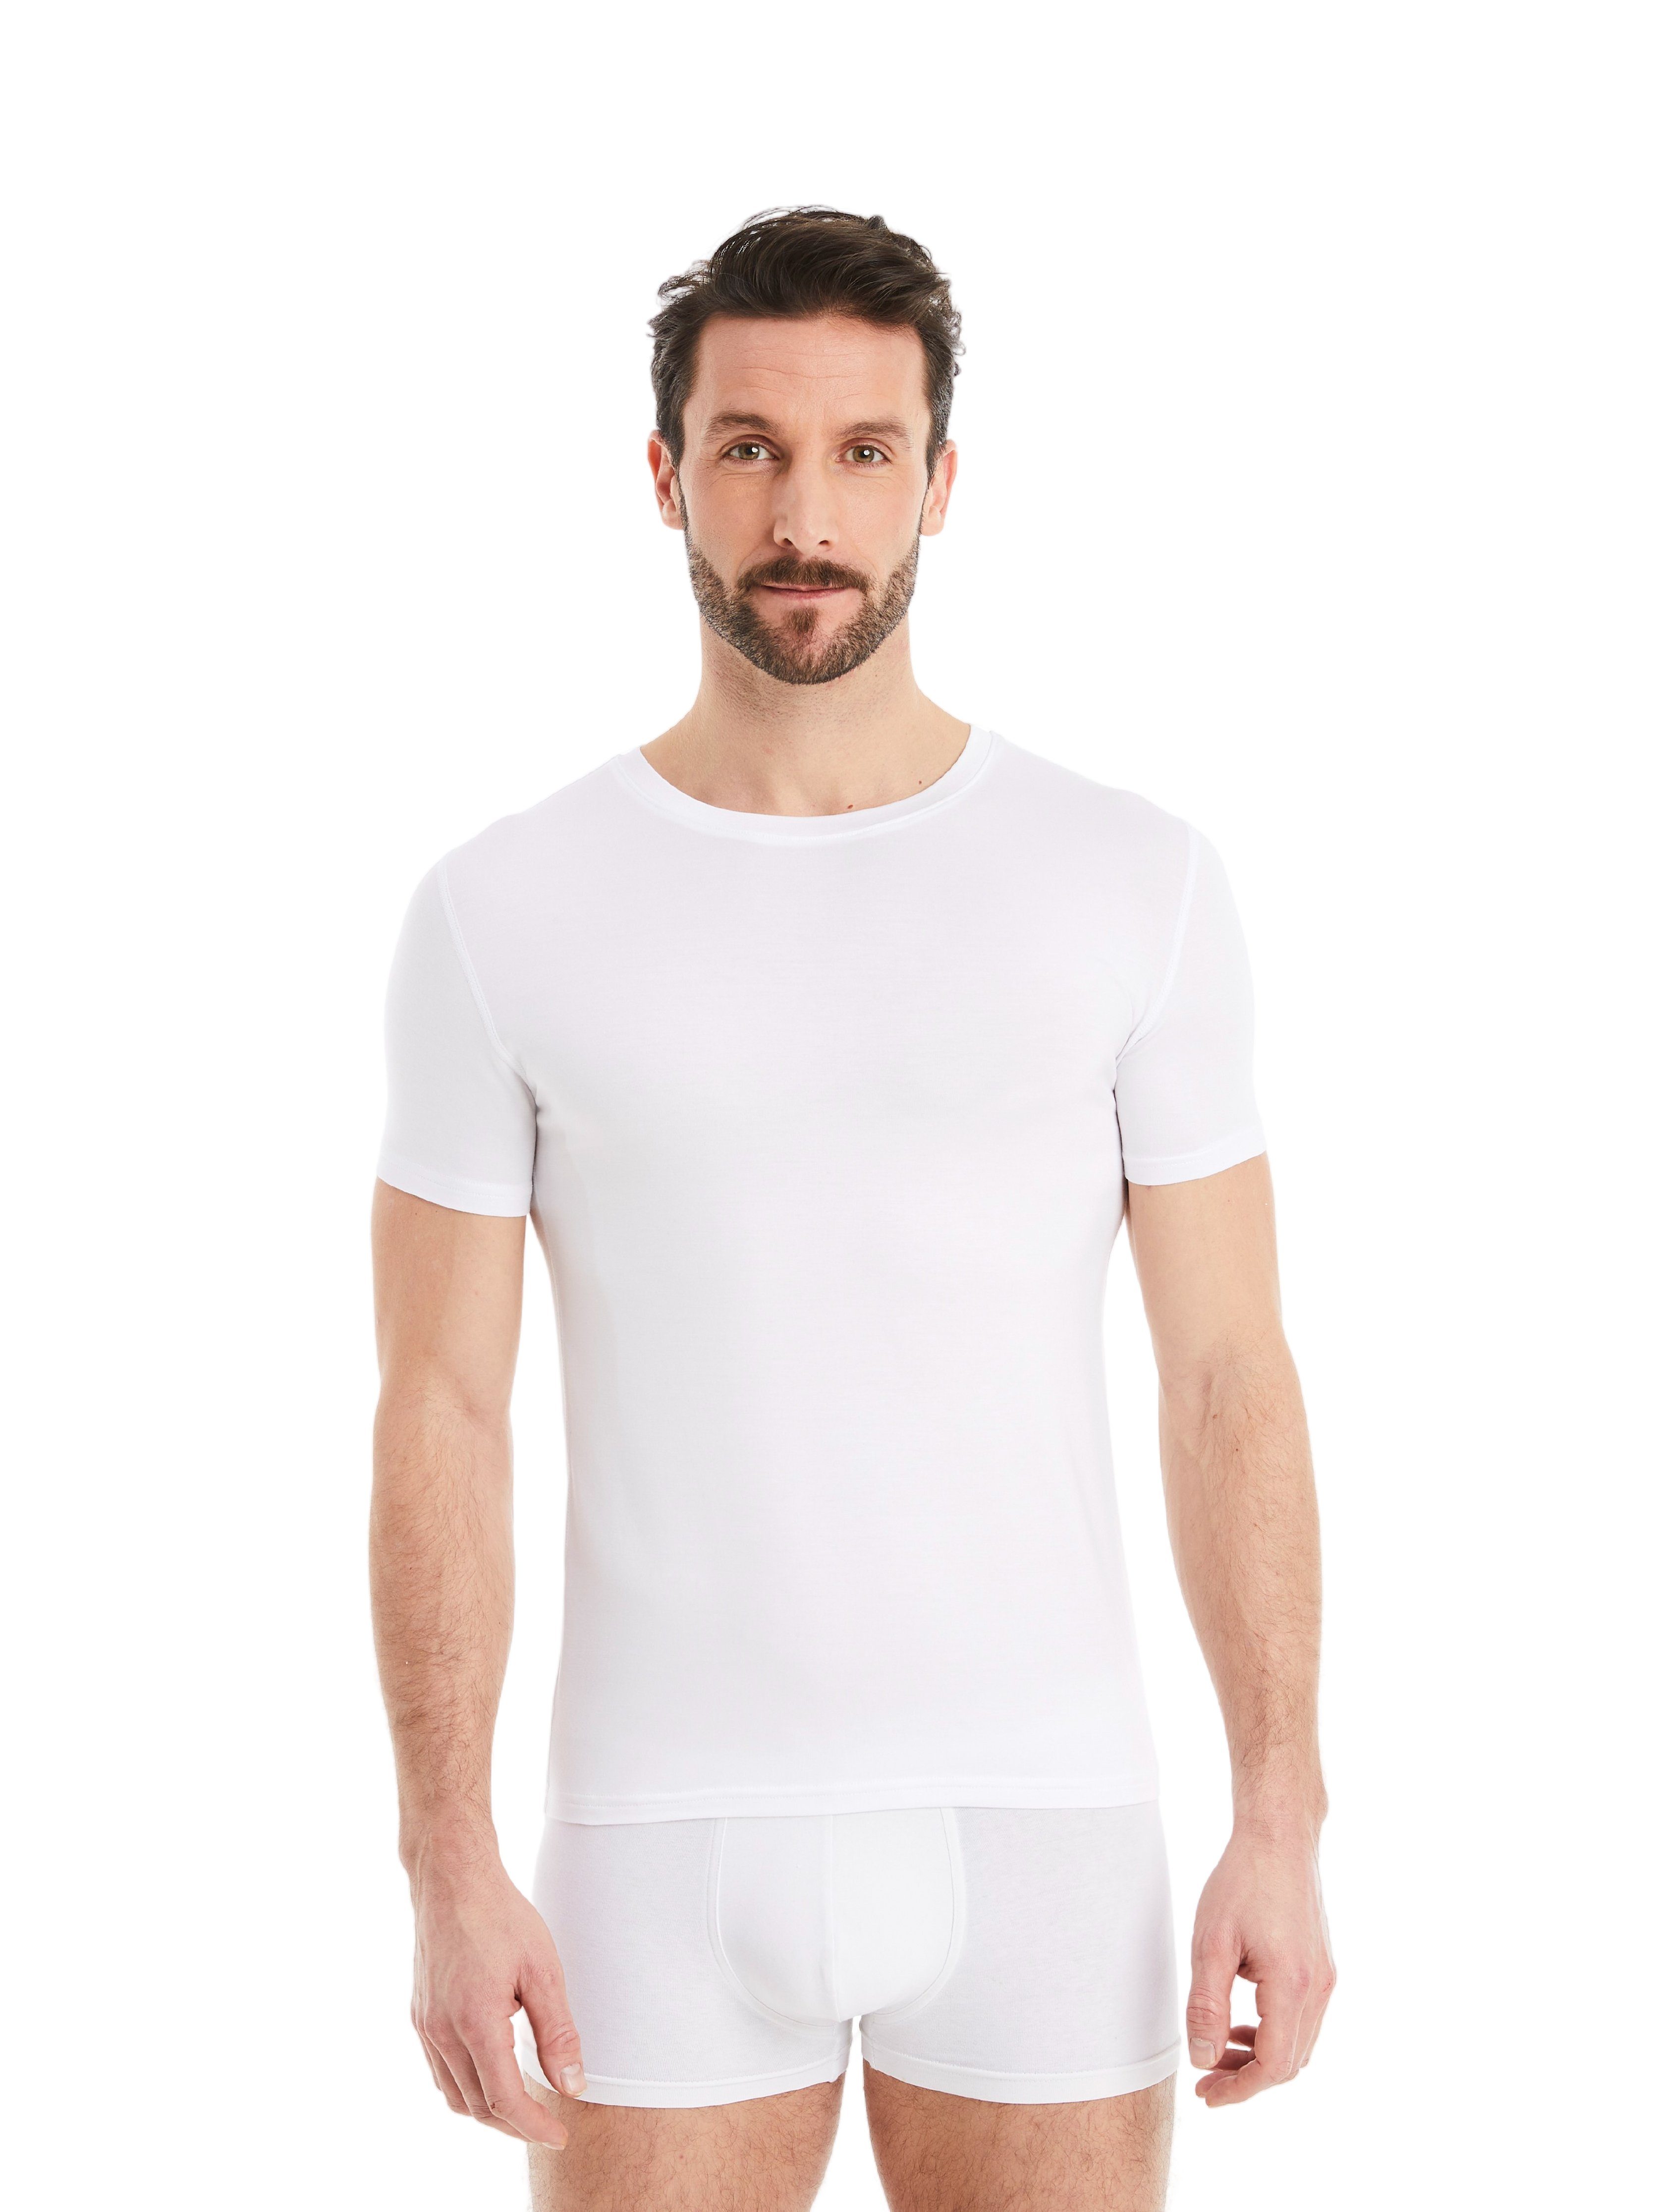 mit Herren FINN Unterhemd Design Micro-Modal maximaler Tragekomfort Weiß Rundhals Unterhemd Kurzarm Business Stoff, feiner